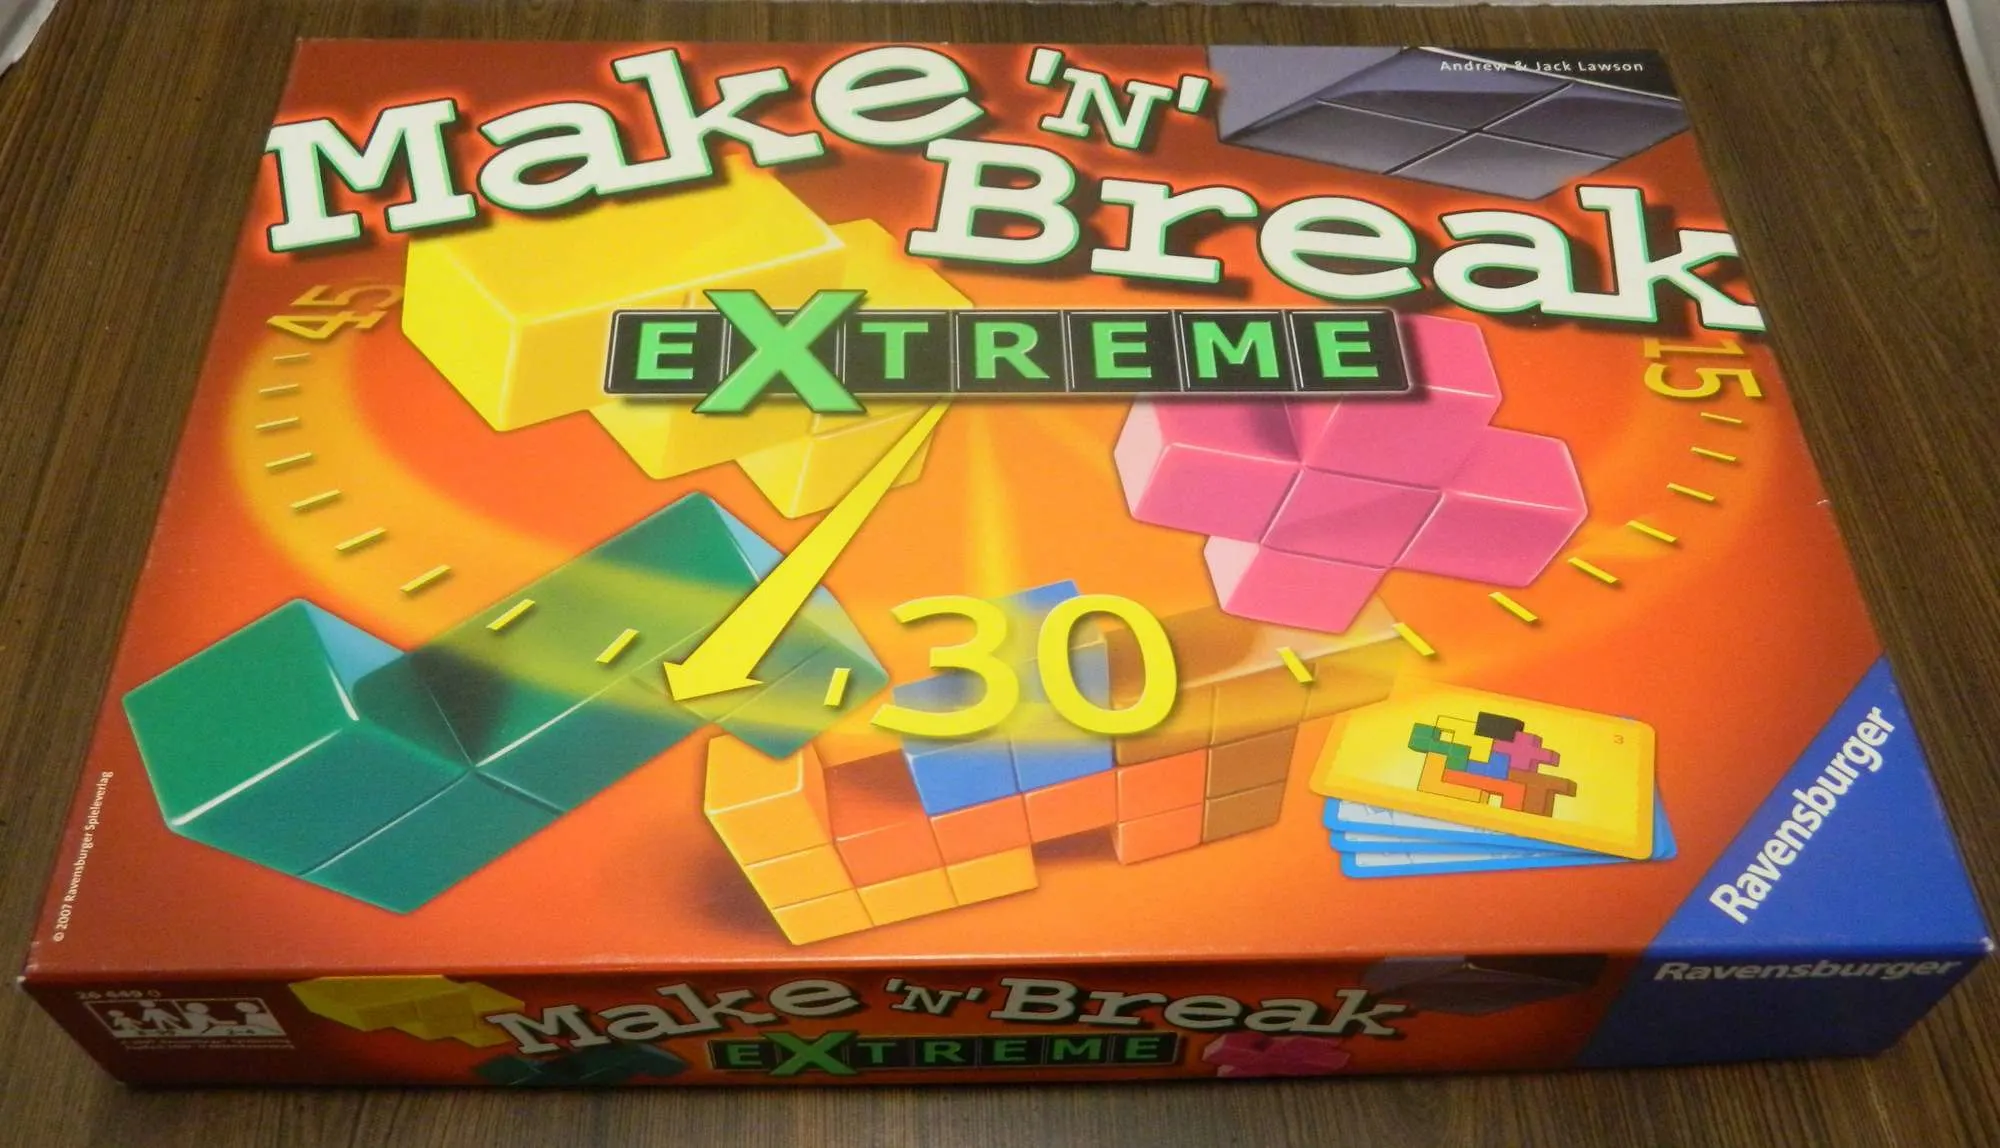 Make 'N' Break Extreme Board Game Review - Geeky Hobbies